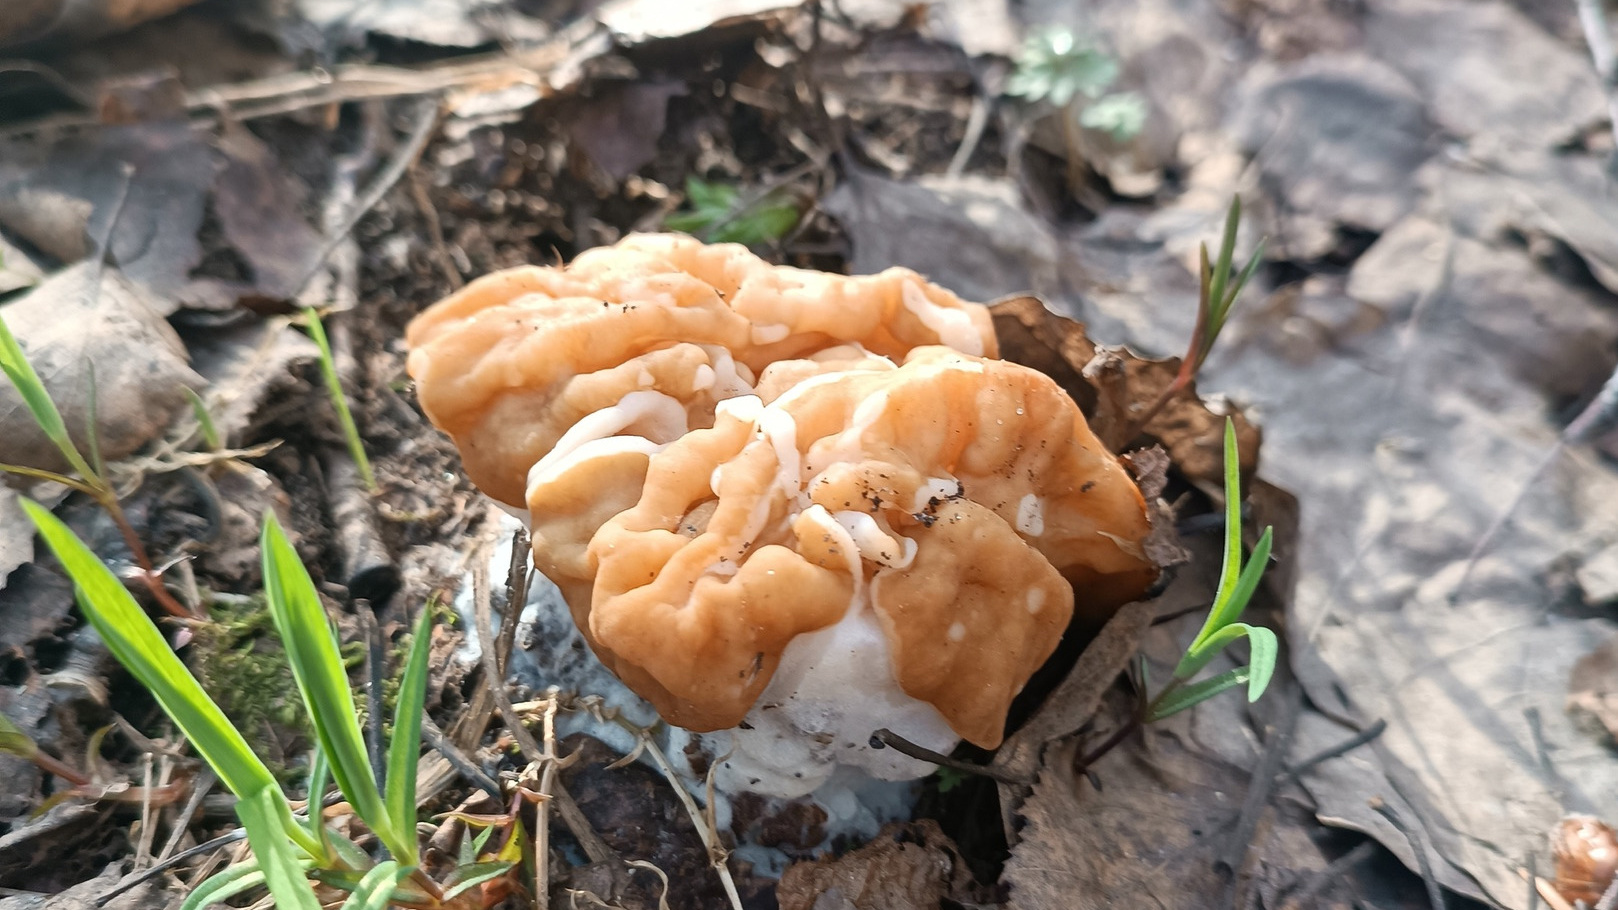 В Прикамье пошли первые грибы — сморчки и строчки. Где их искать, как обезвредить и что с ними готовить?